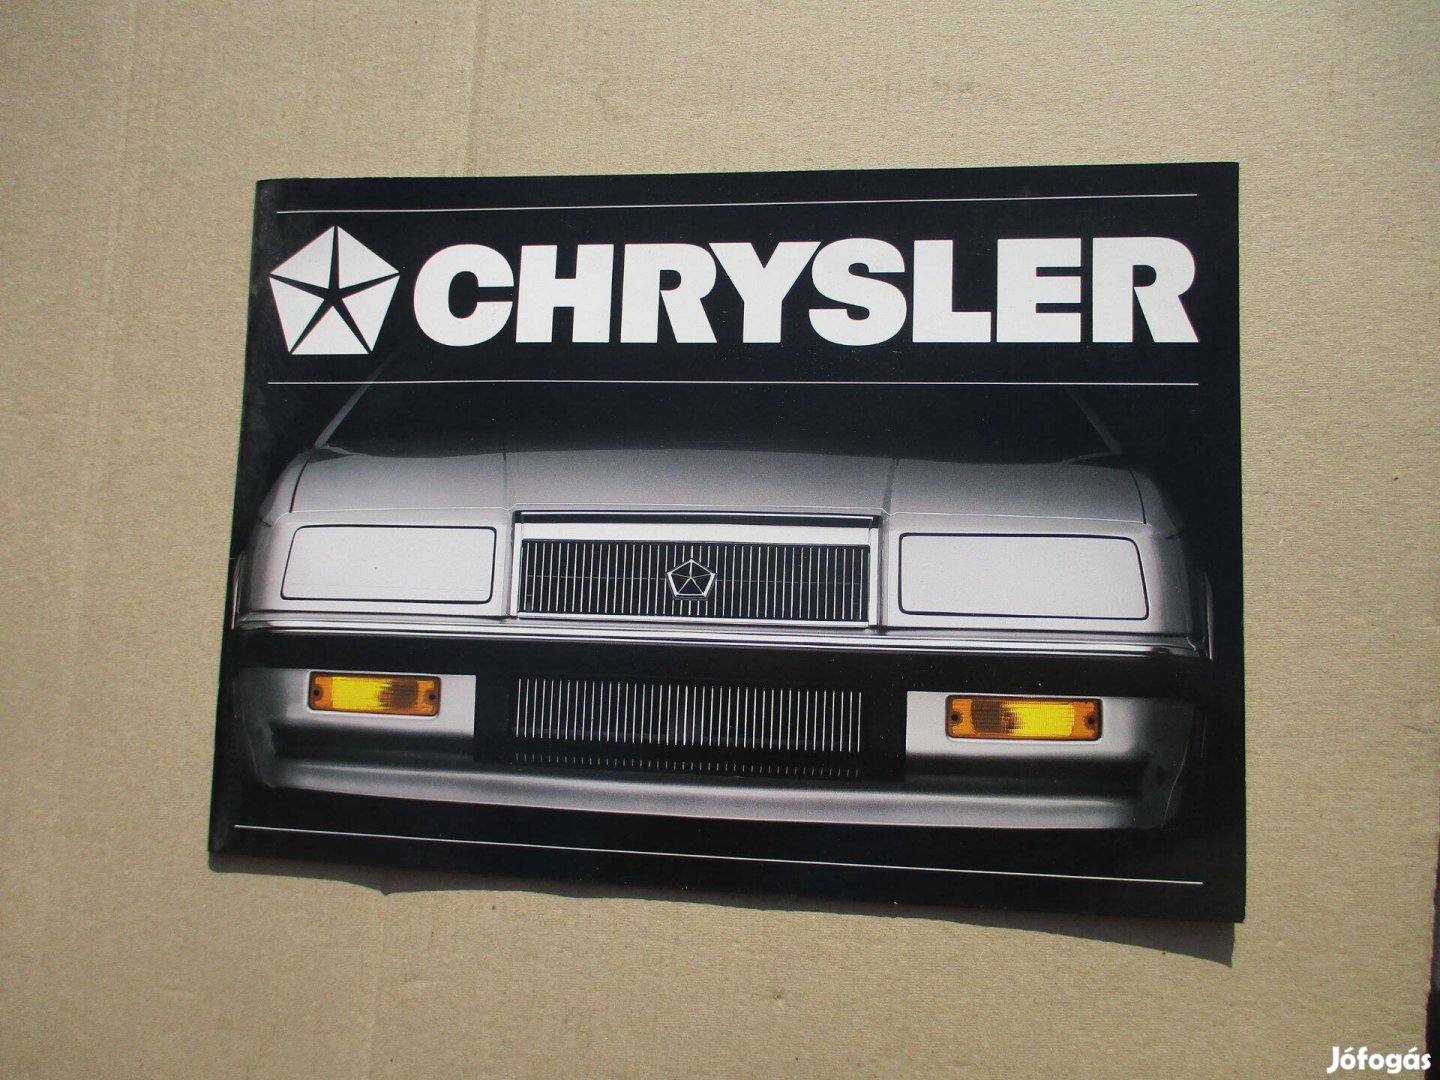 Chrysler prospektus